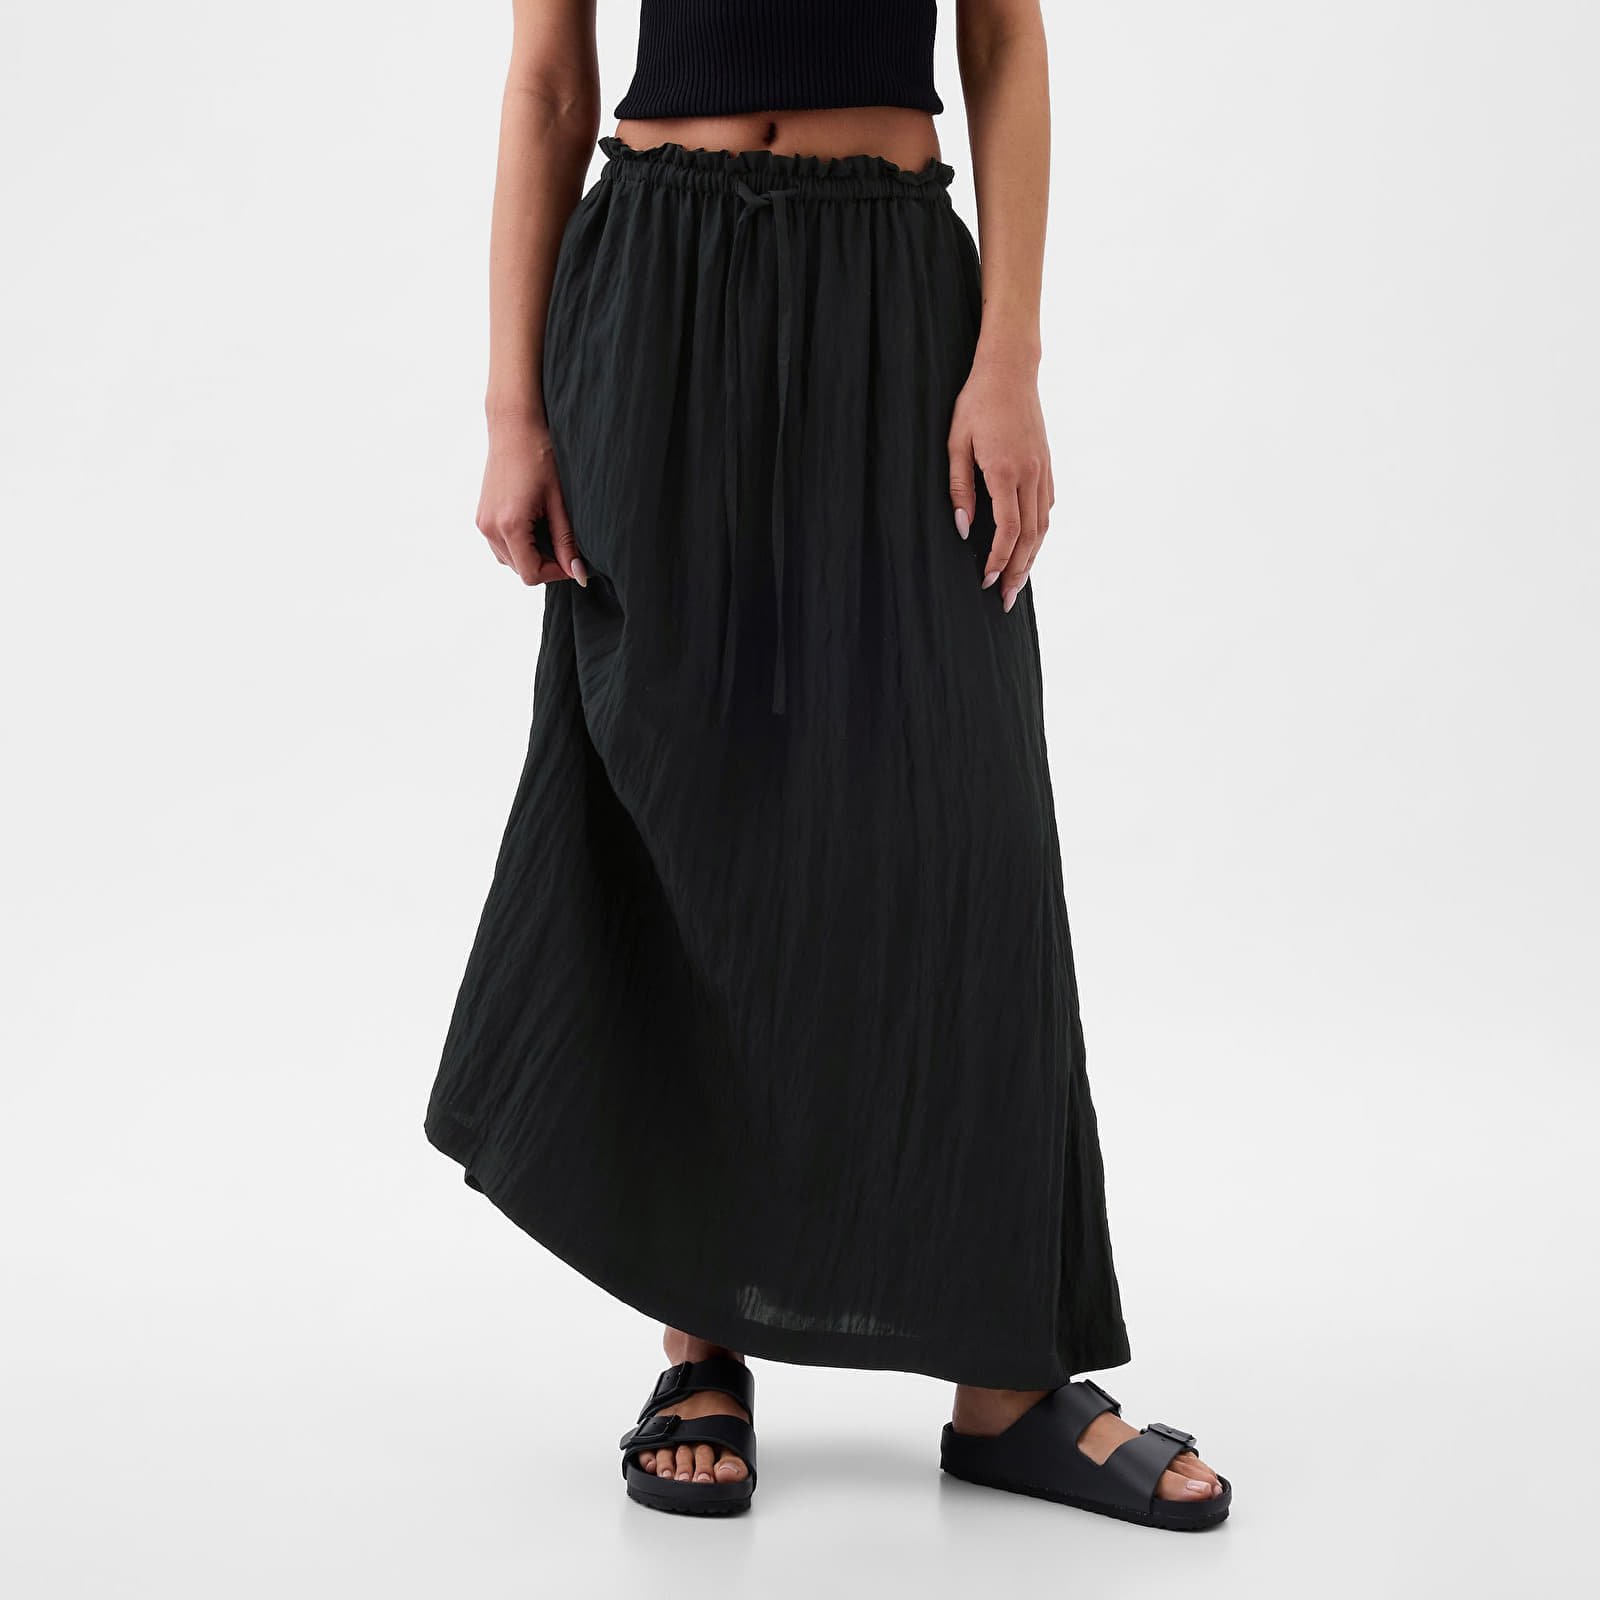 Skirt Paperbag Pull On Maxi Skirt Black